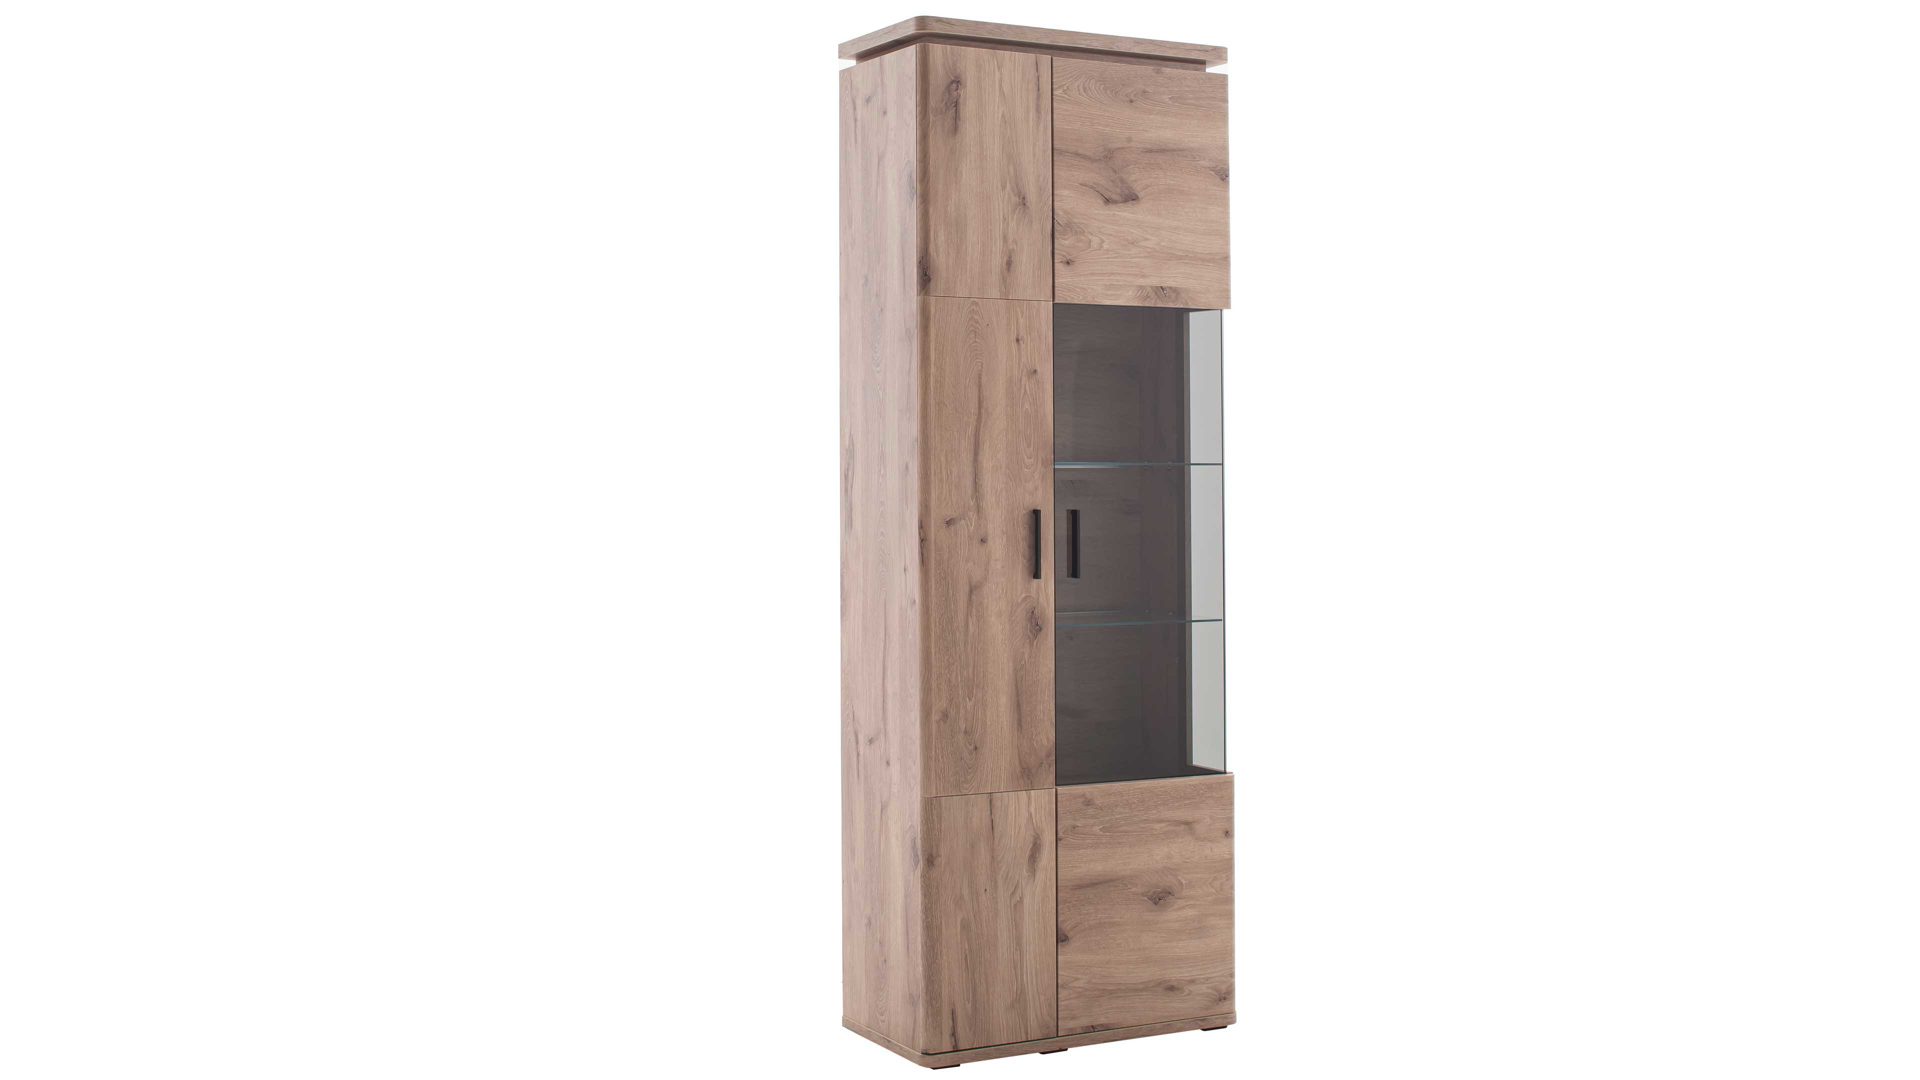 Vitrine Mca furniture aus Holz in Holzfarben Wohnprogramm Modena - Vitrine Viking Eiche - zwei Tür, Breite ca. 75 cm